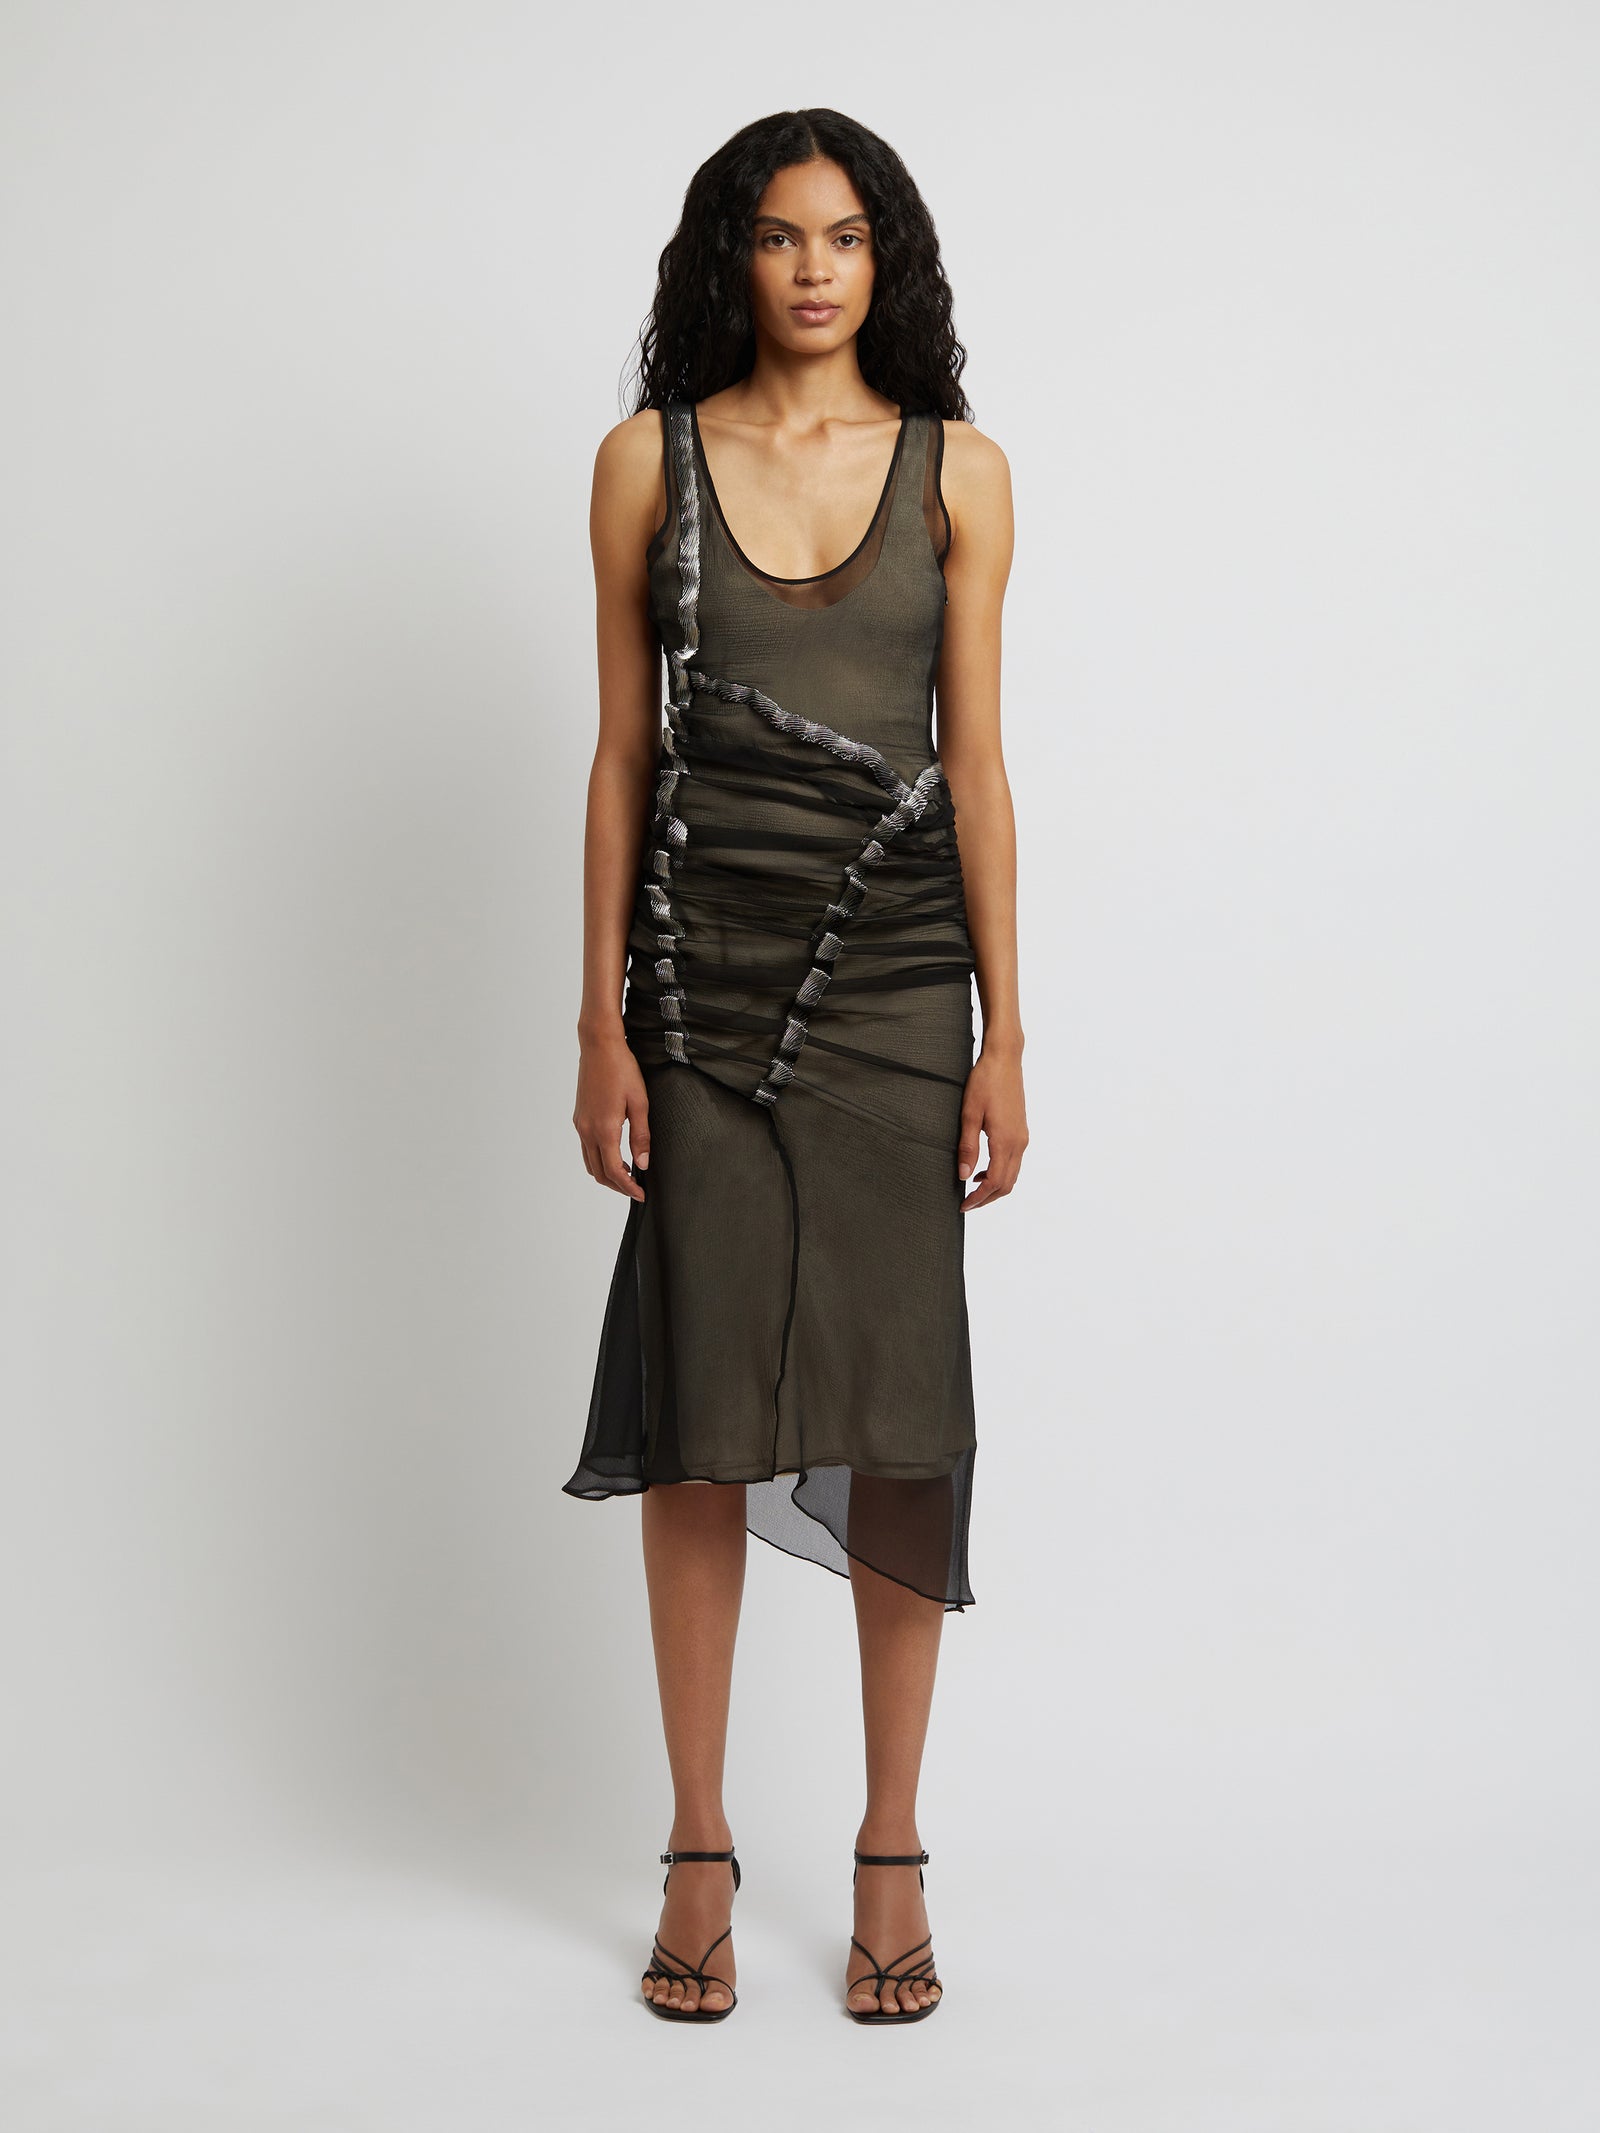 Undulated Metal Chiffon Lace Tank Dress